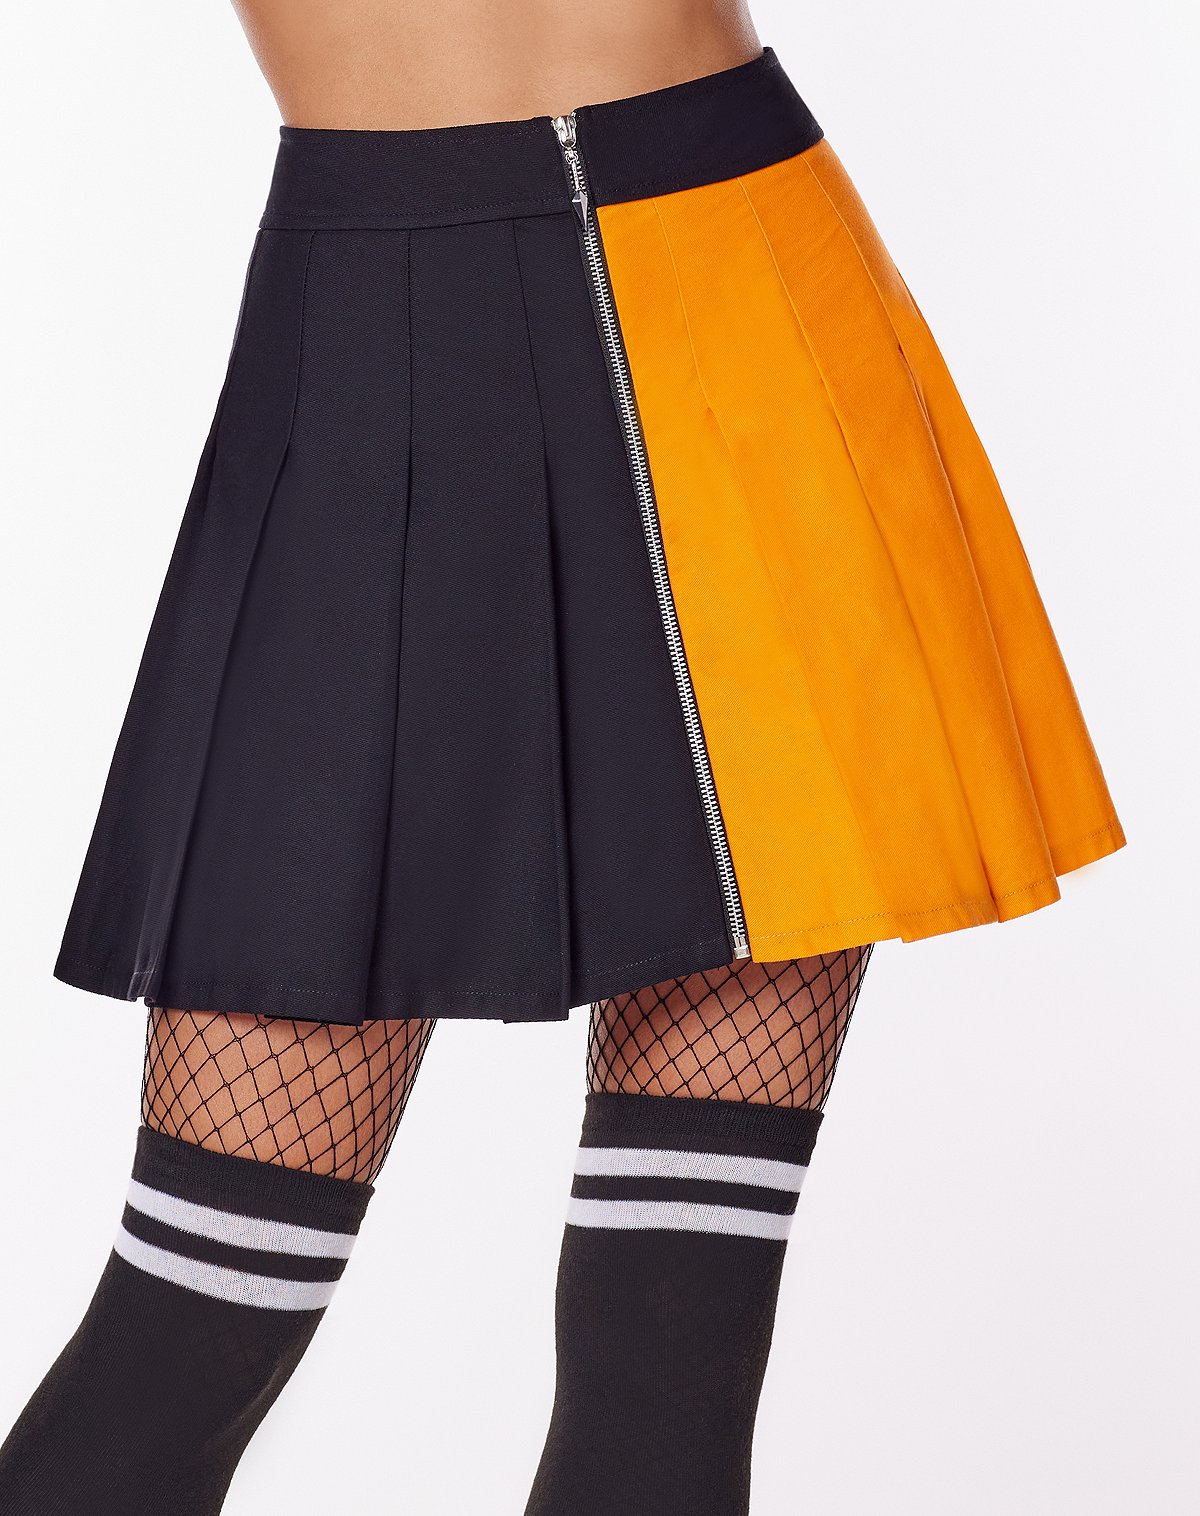 Black and Orange Naruto Skirt – Naruto Shippuden